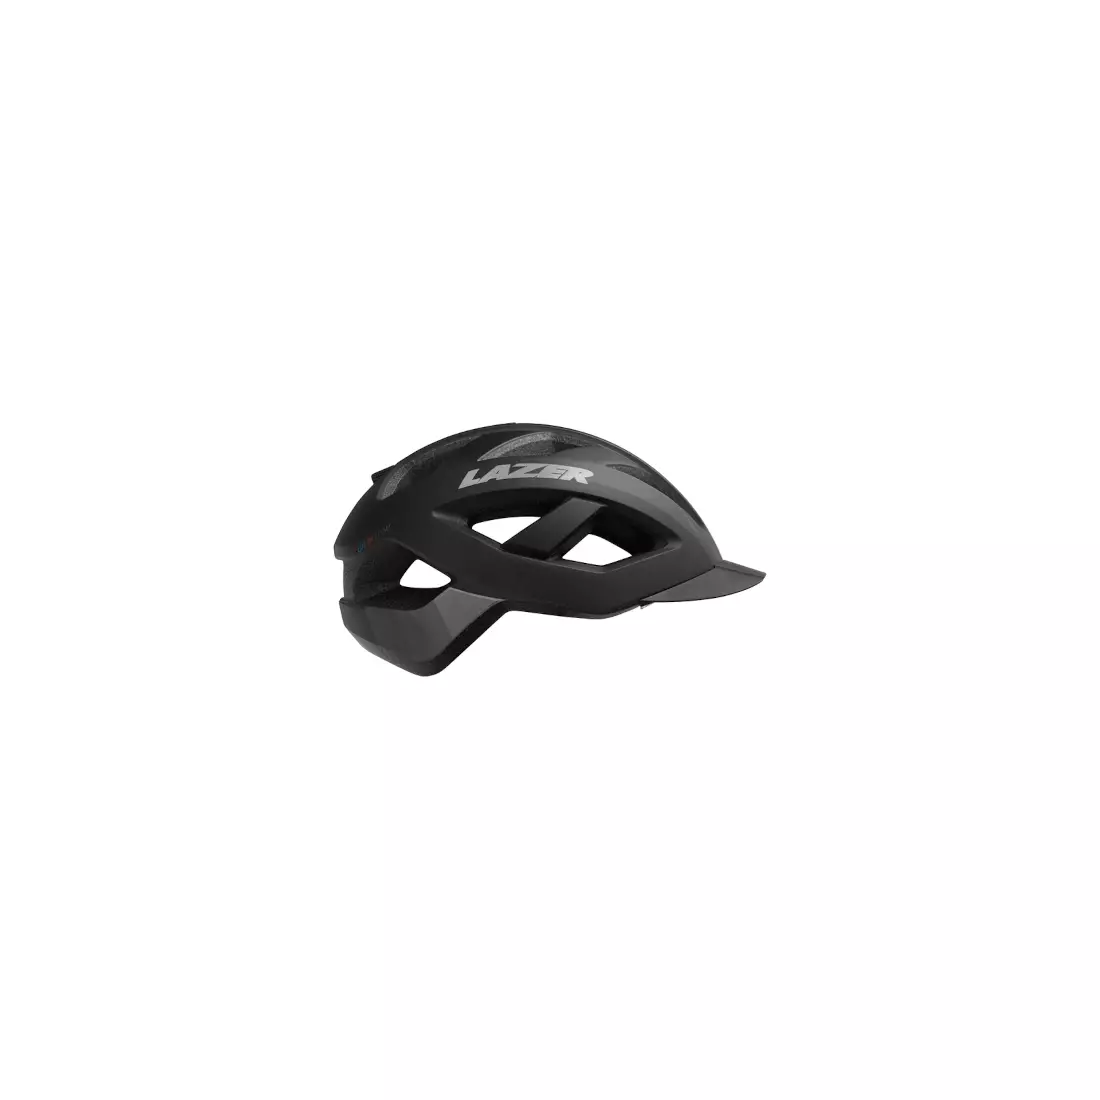 LAZER cască de bicicletă universală cameleon CE matte black grey BLC2207888032